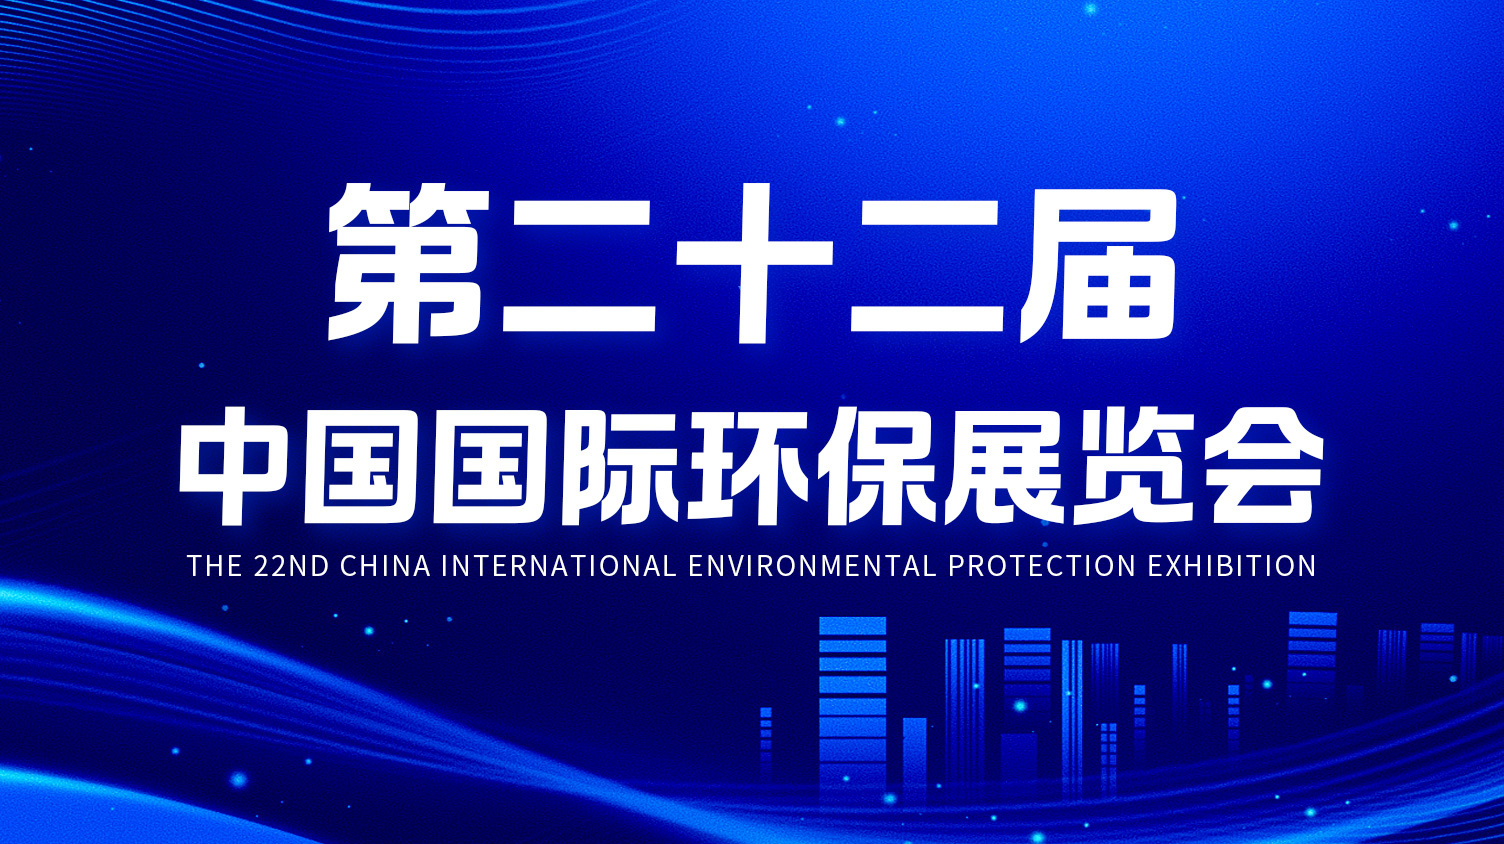 全网担保网环境精彩亮相第二十二届中国国际环保展览会